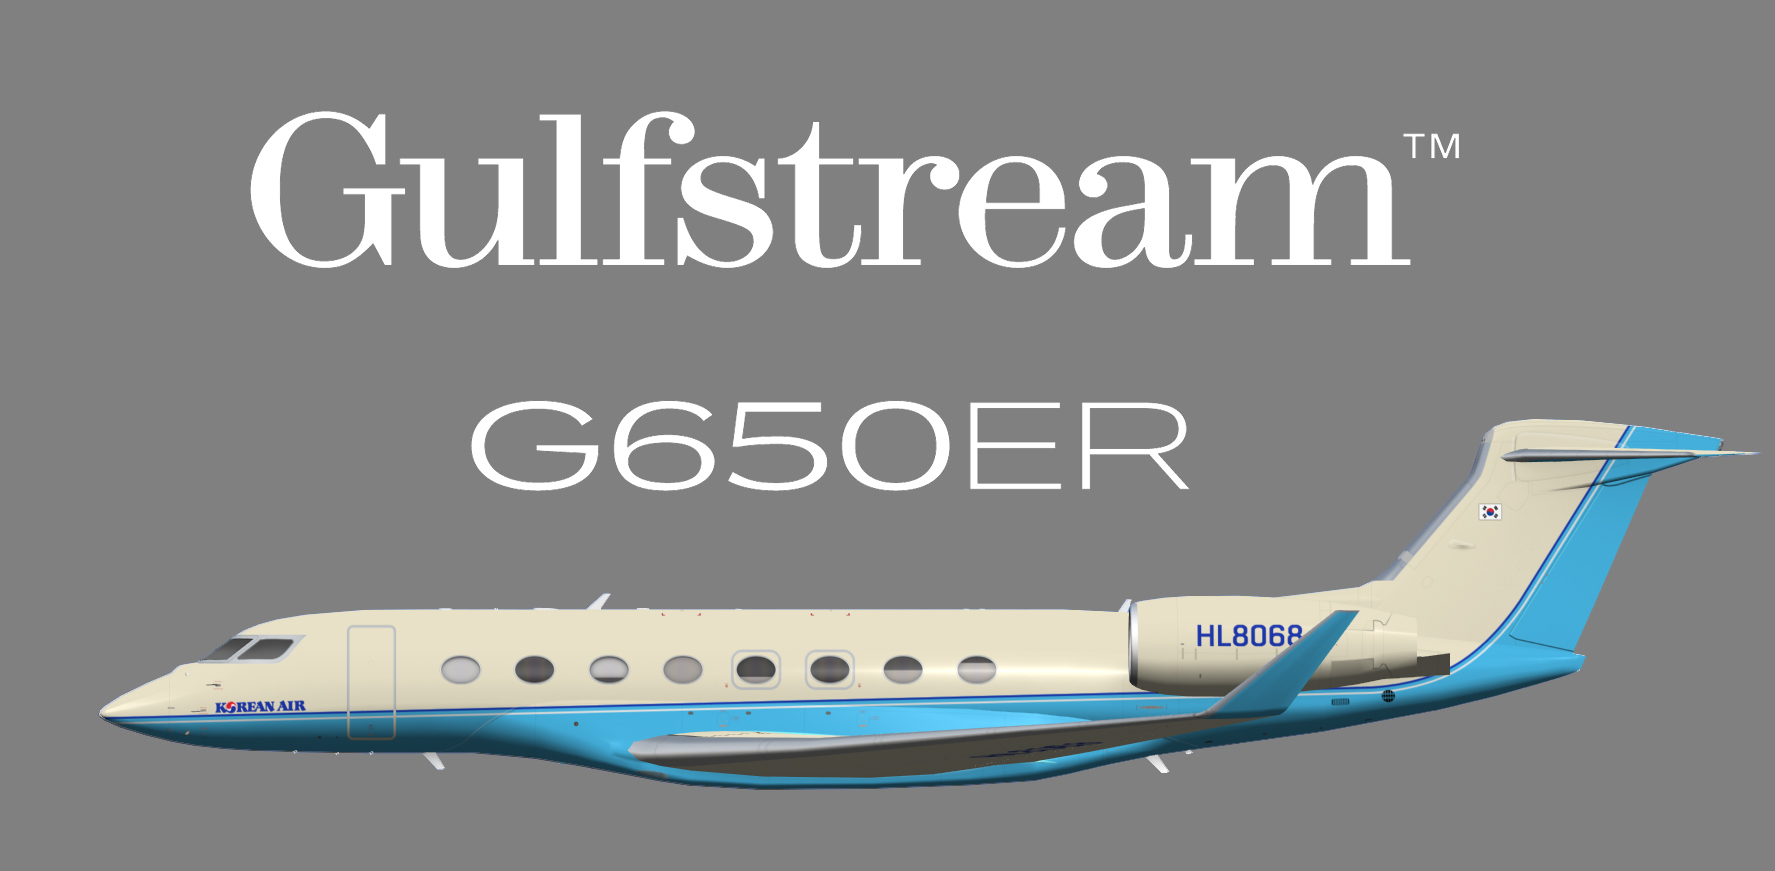 Korean Air Executive Gulfstream G650 (G-VI)